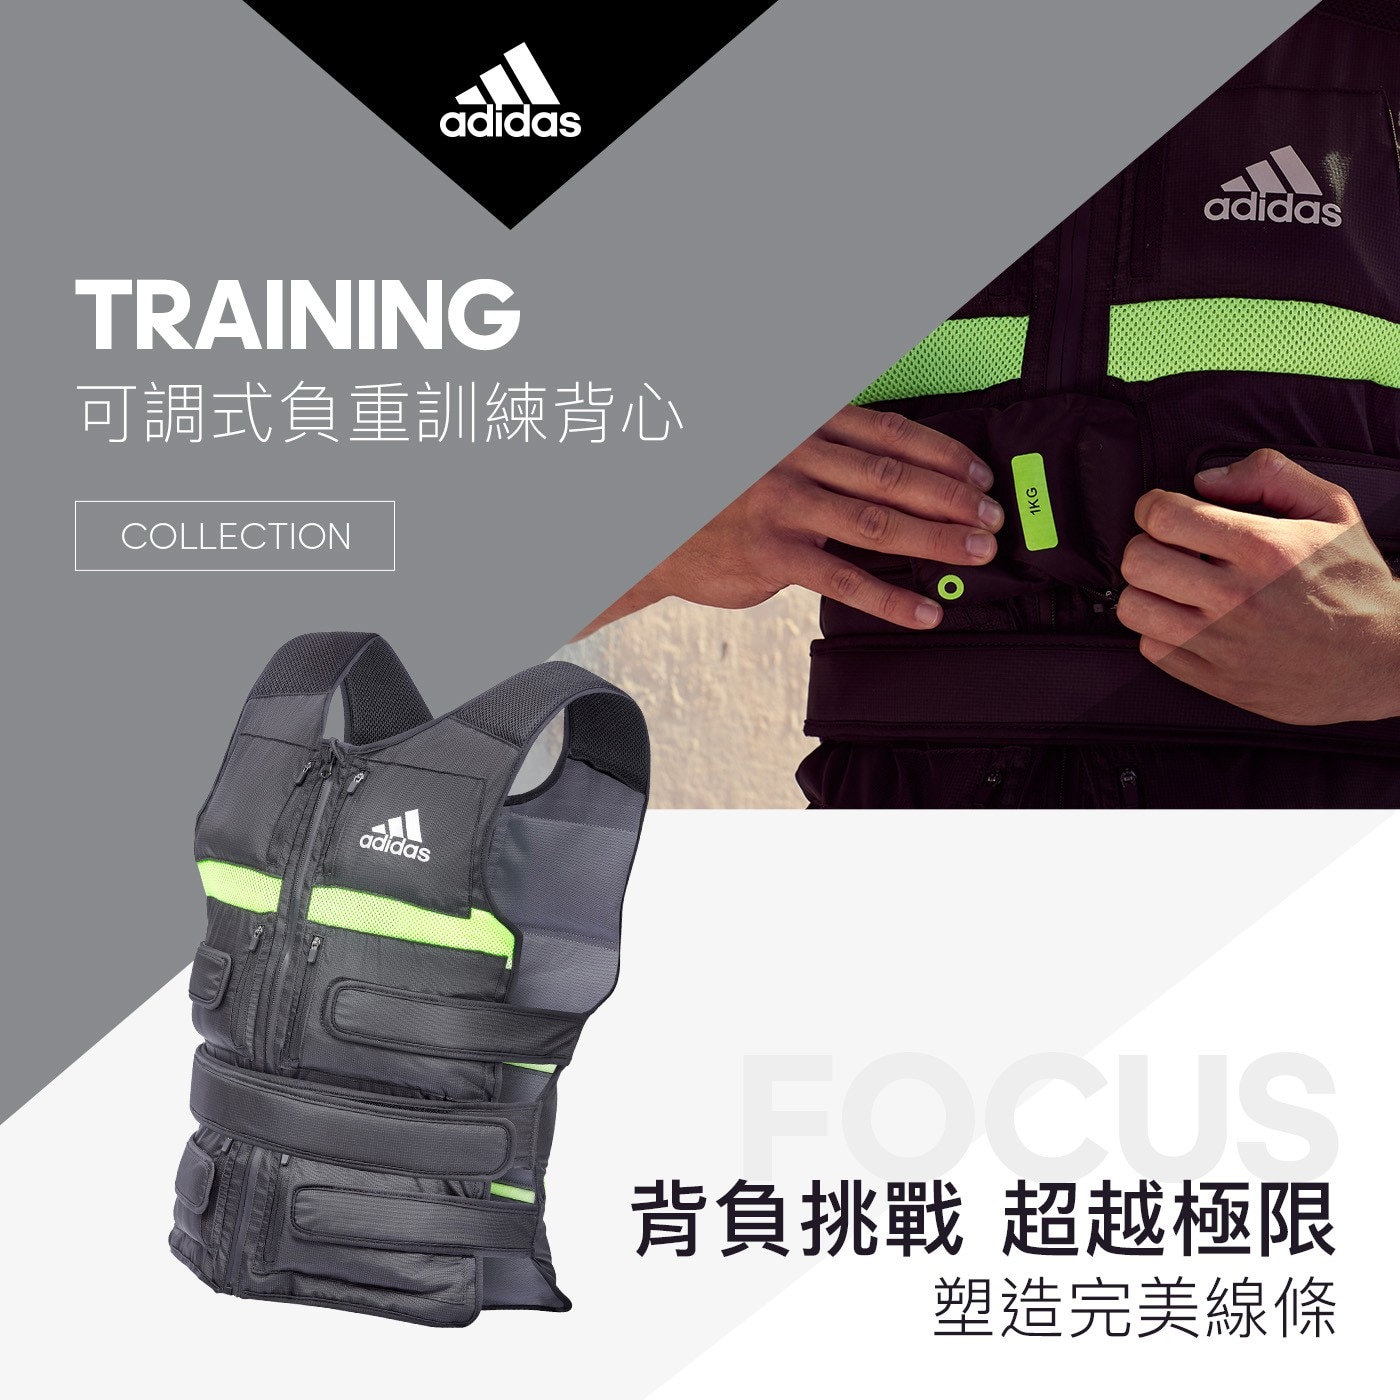 Adidas 可調式負重訓練背心 10公斤拉鍊式配重袋 自由調整總重量